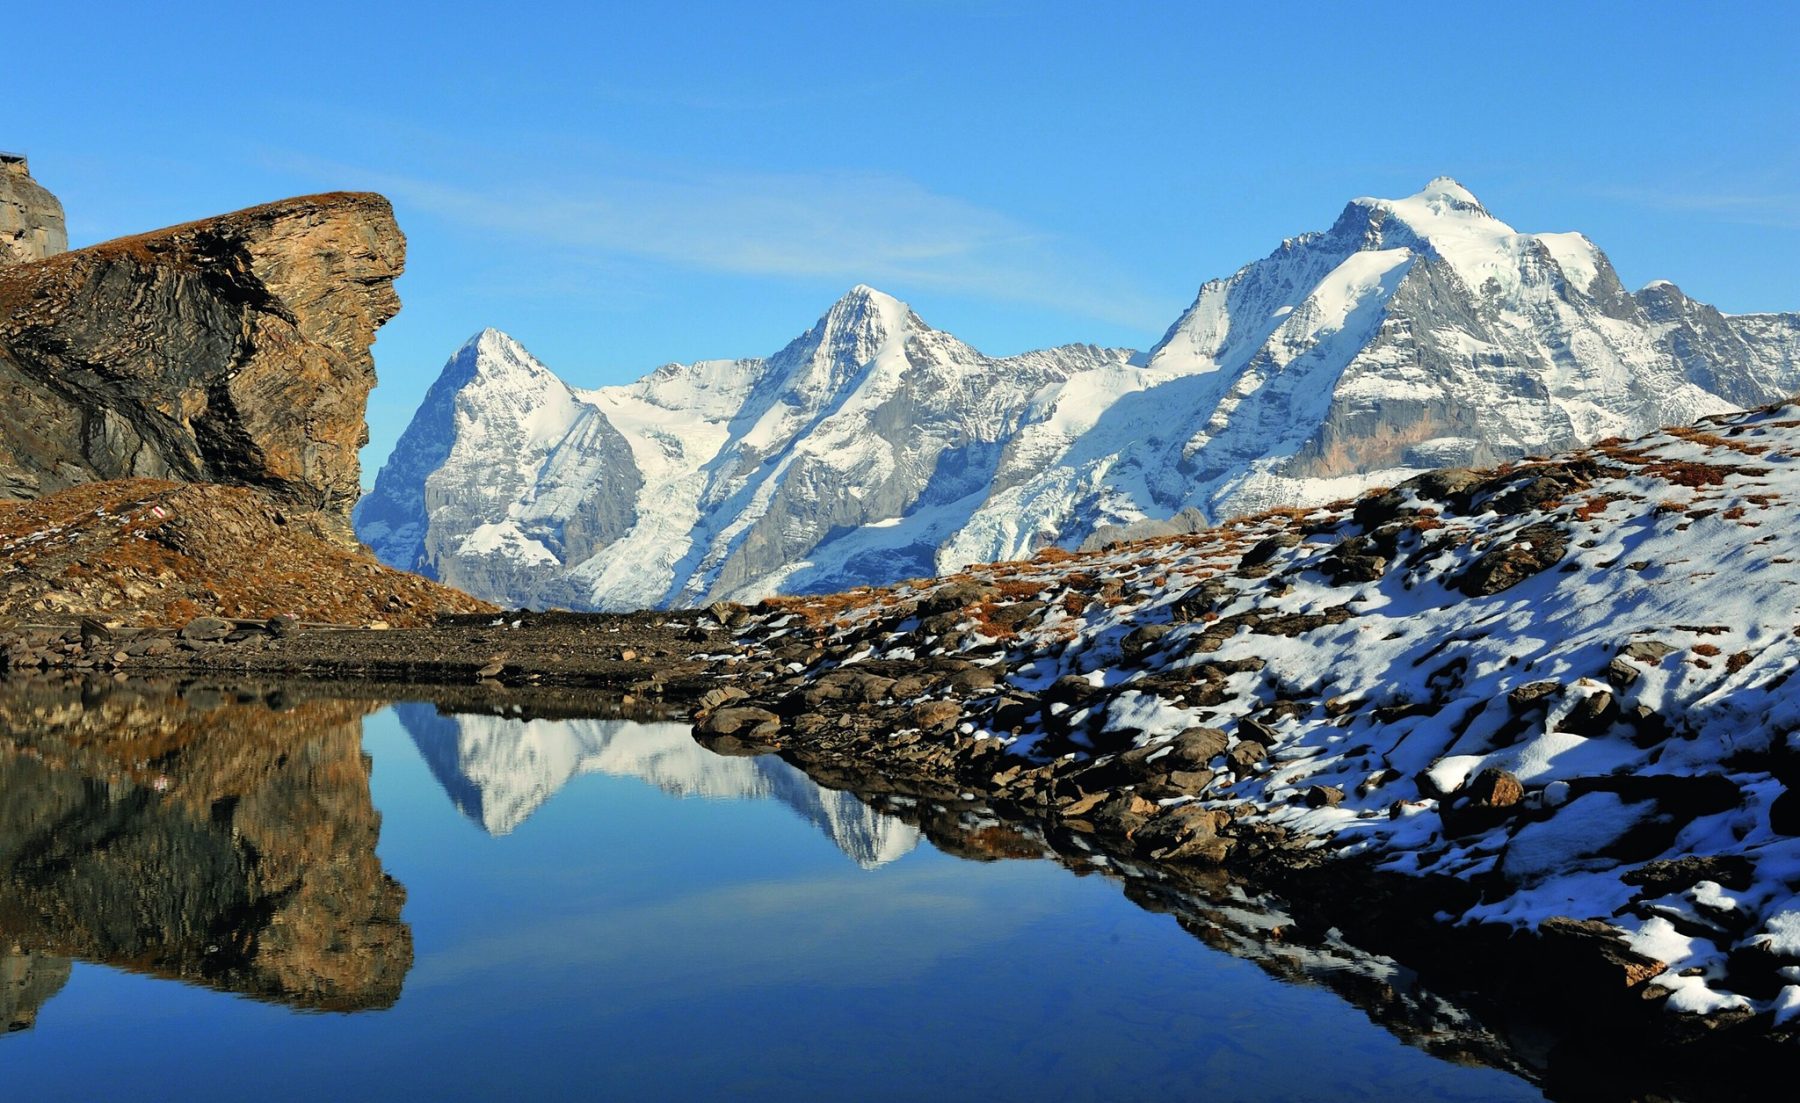 De Jungfrau regio barst van de mooie outdooractiviteiten